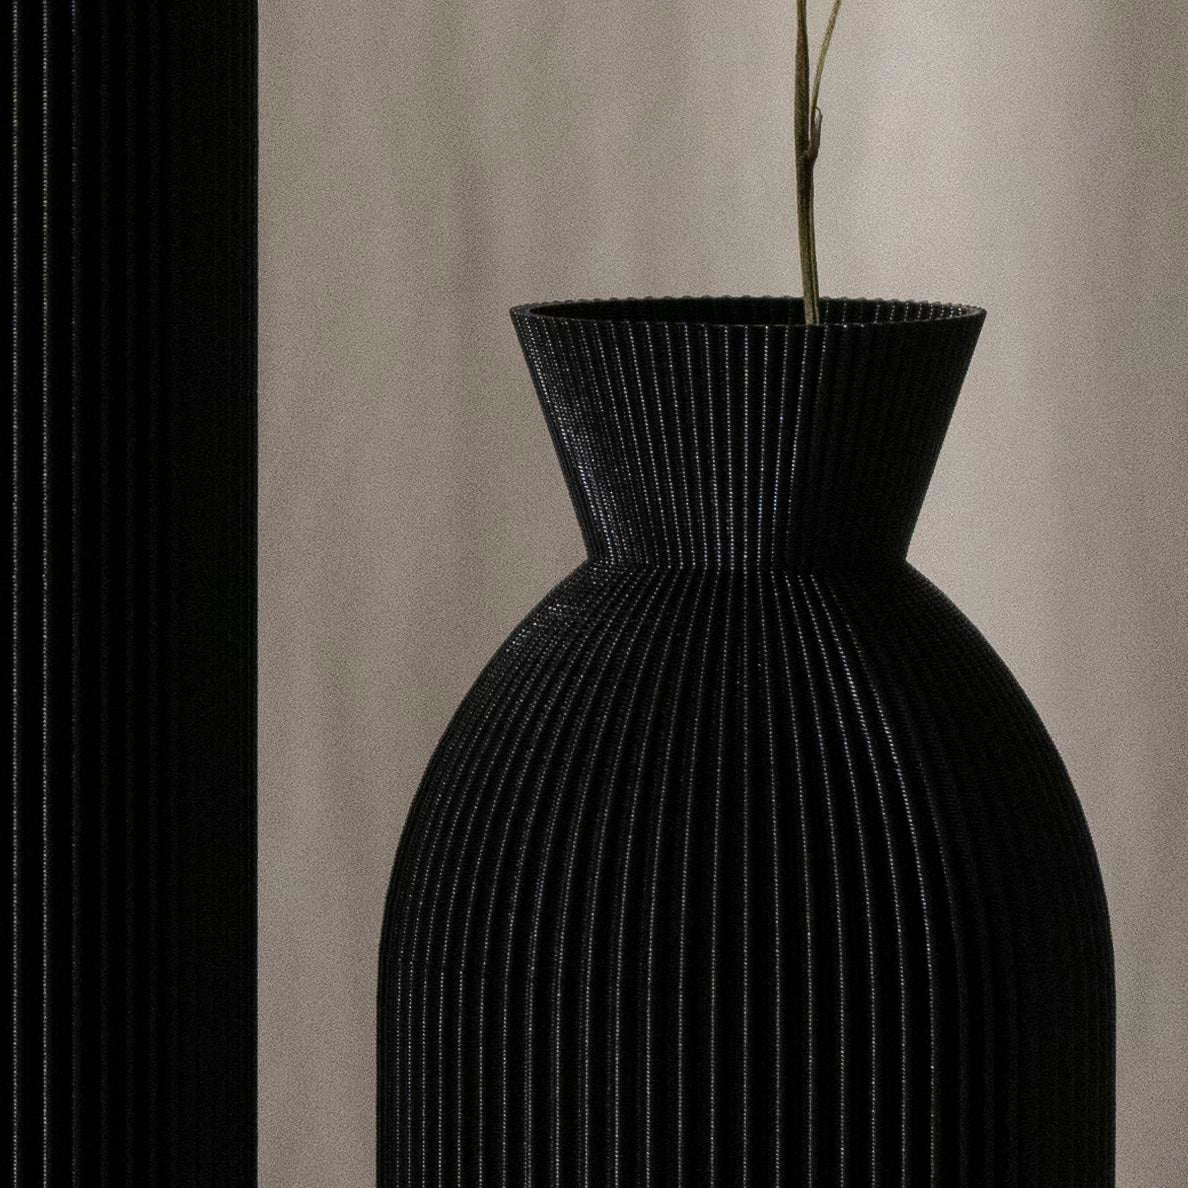 Vase Gi • in schwarz